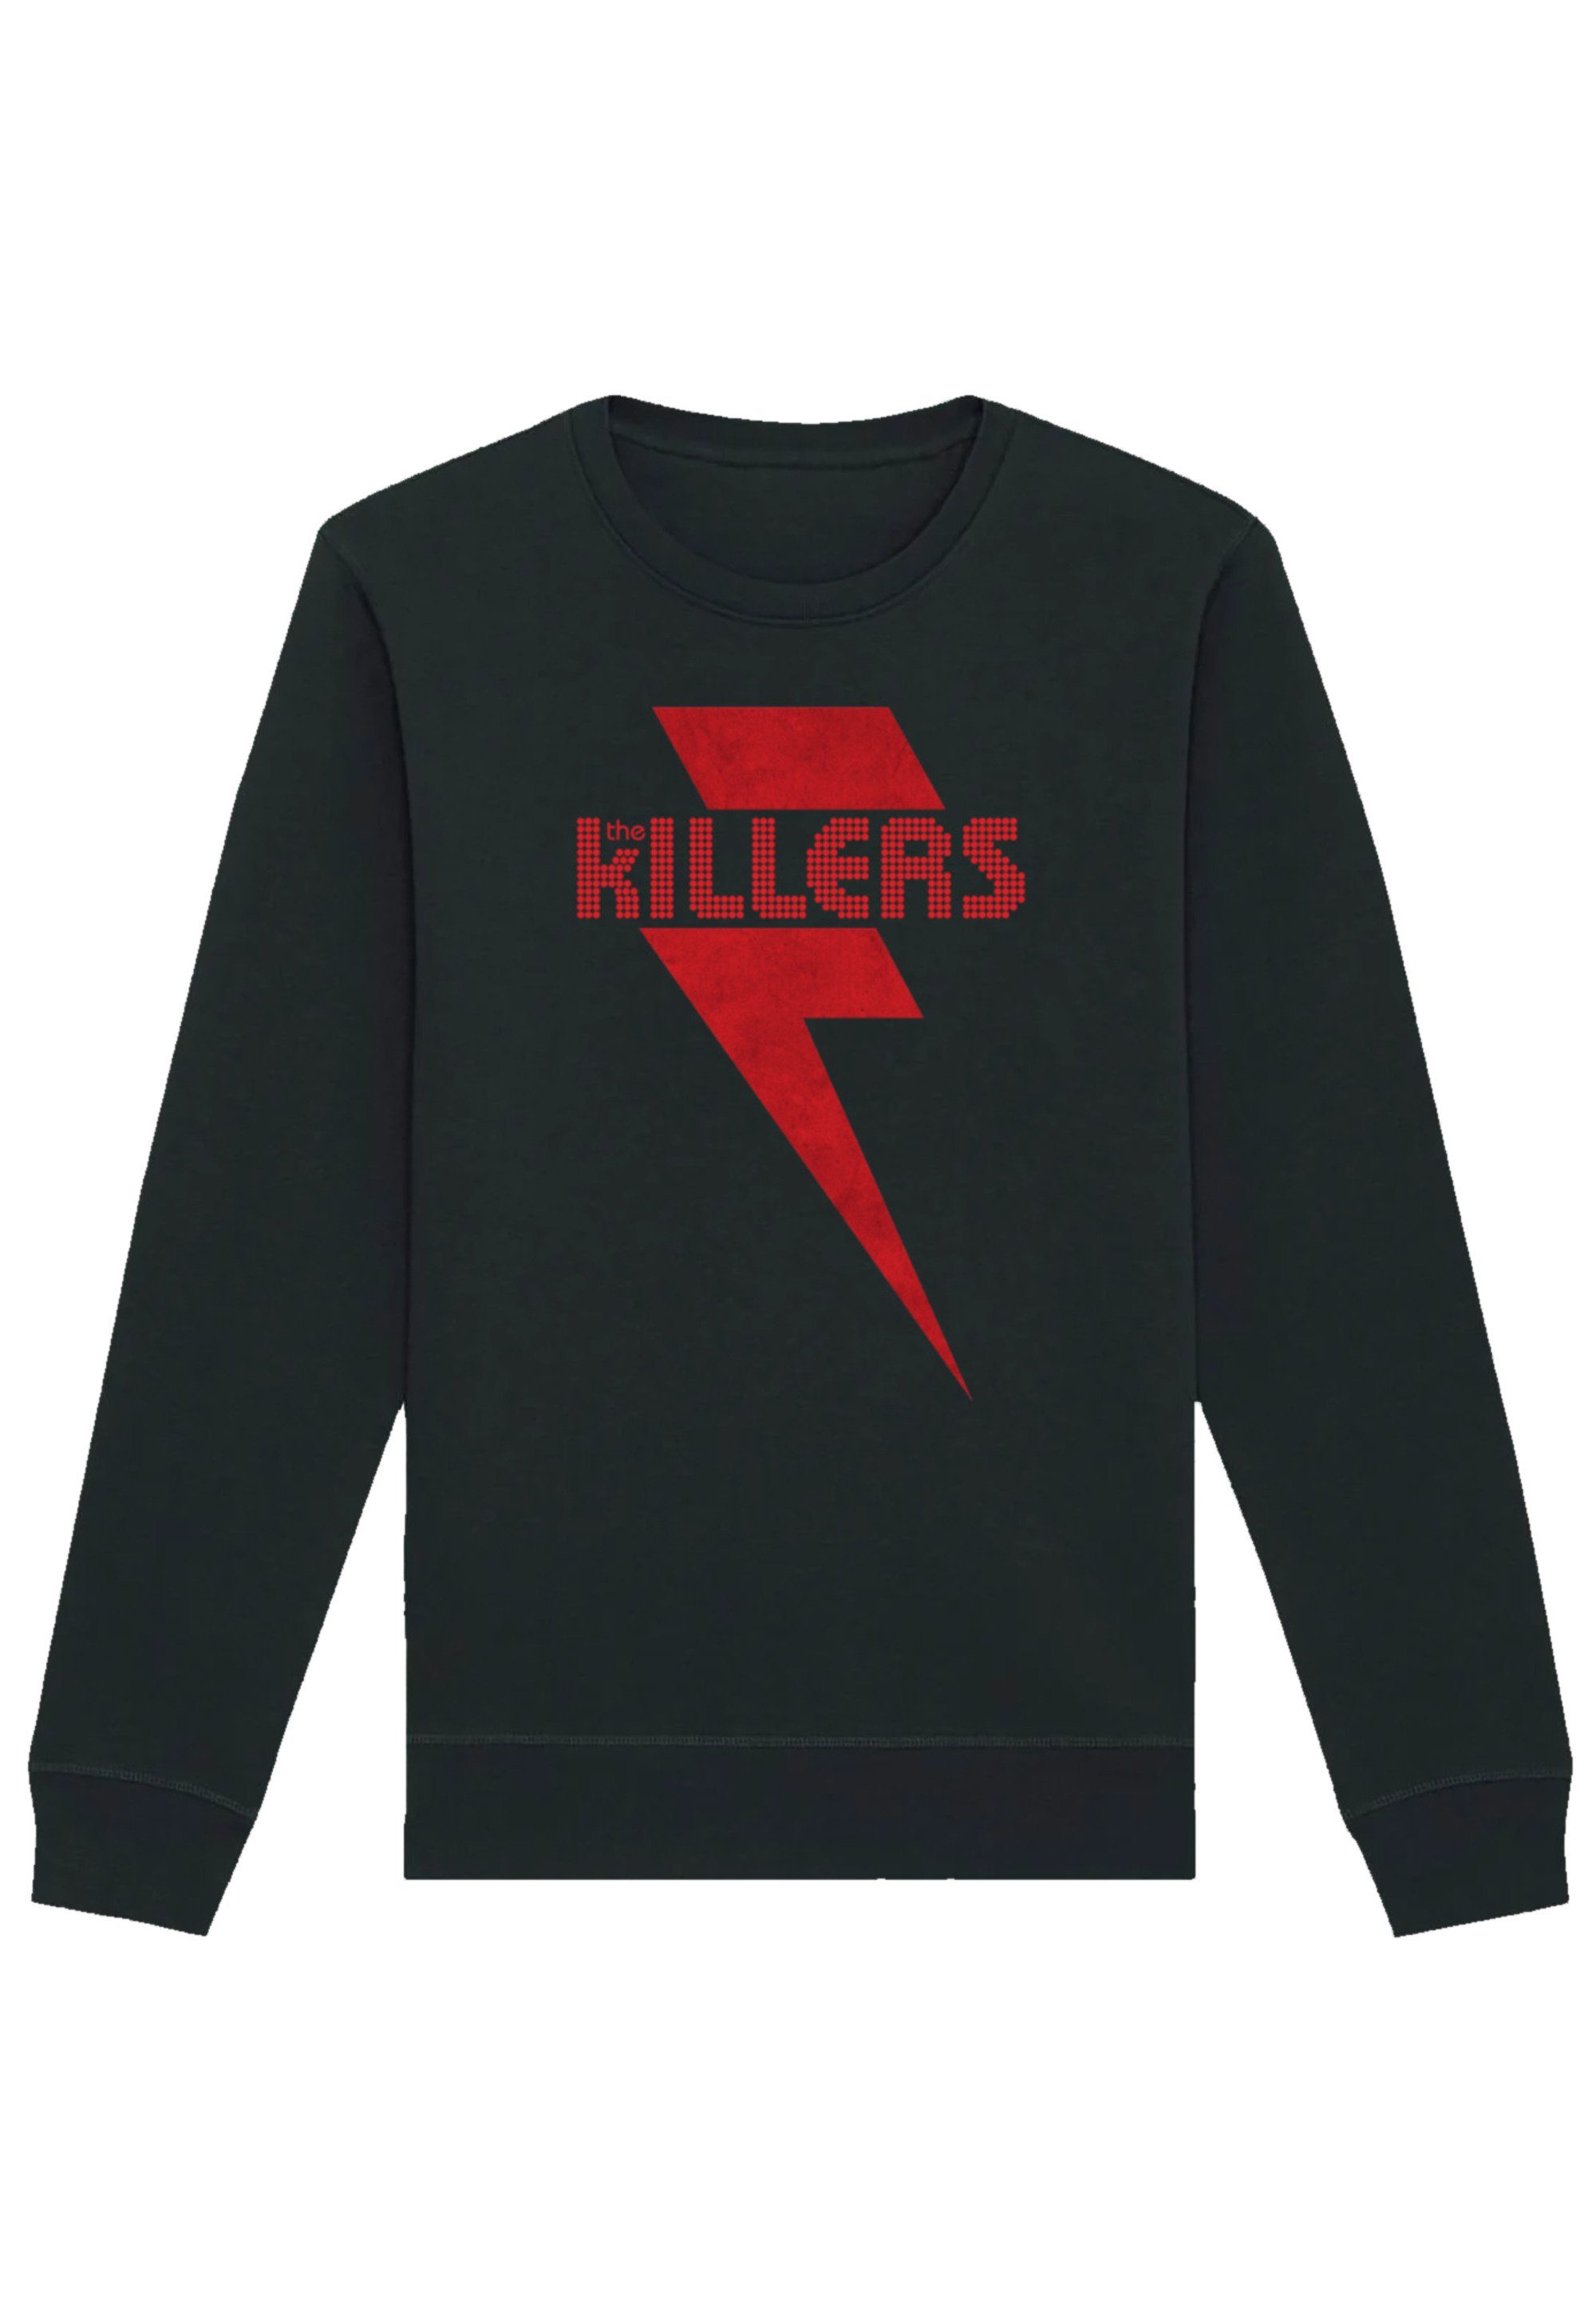 The Bolt schwarz Killers F4NT4STIC Sweatshirt Red Print